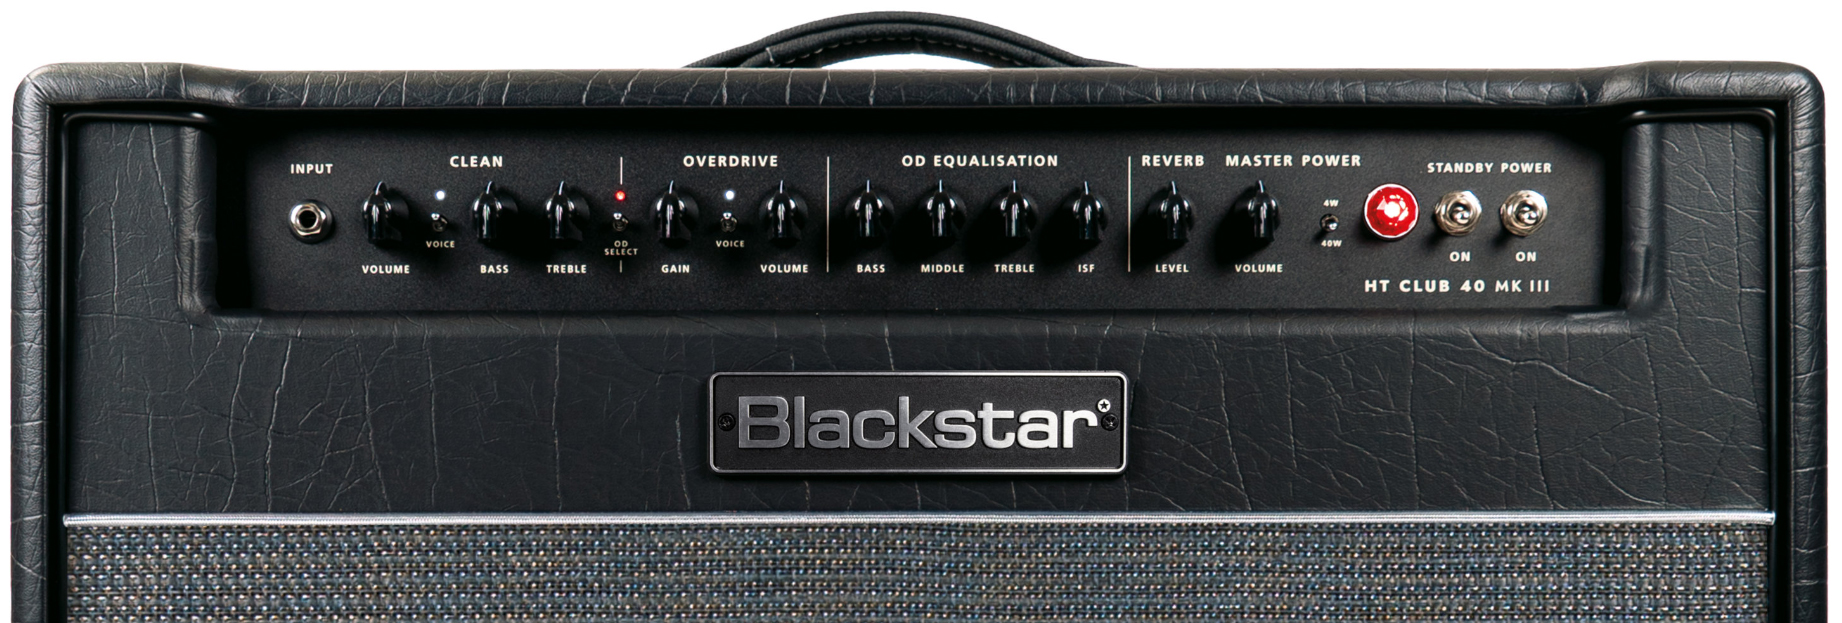 Blackstar Ht Venue Club 40 112 Mkiii 40w 1x12 El34 - Ampli Guitare Électrique Combo - Variation 3